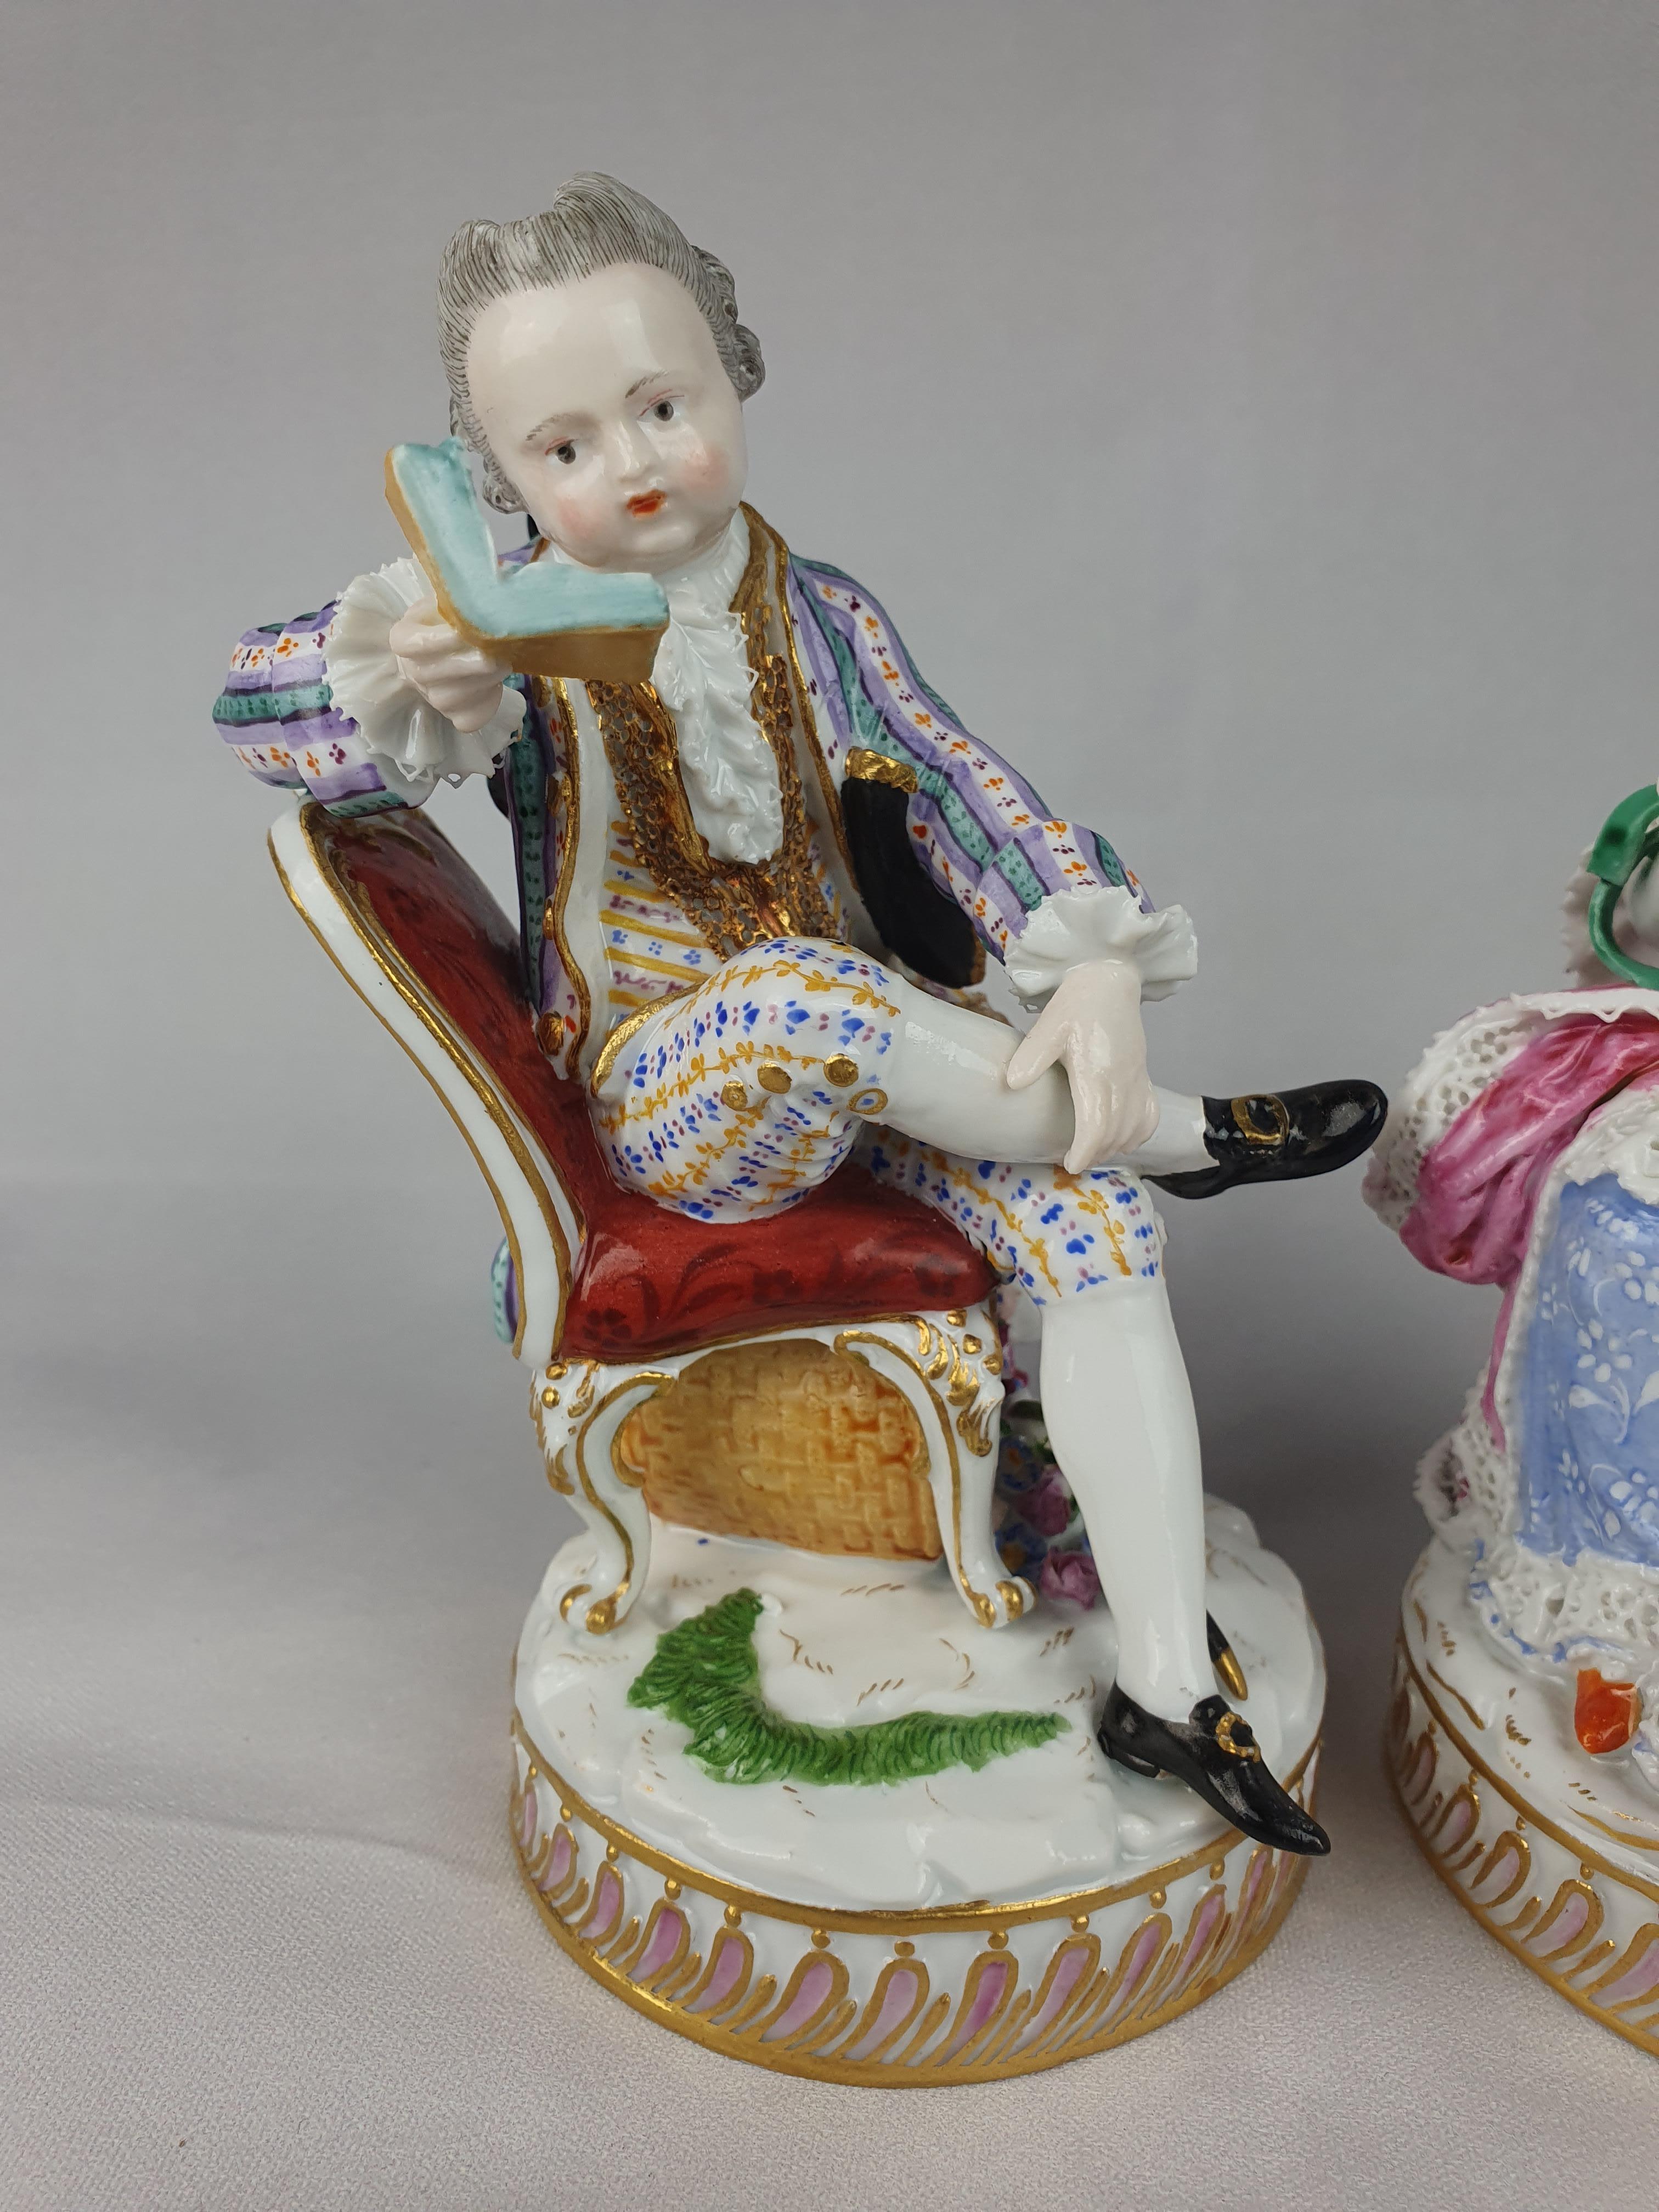 Meissener Paar, sitzender Mann lesend und Frau mit Garnwickler. Erstmals modelliert von Acier CIRCA 1770.

Höhe Mann - 13cm Frau - 13.5cm

Modellnummer C28 beide

Circa 1850.